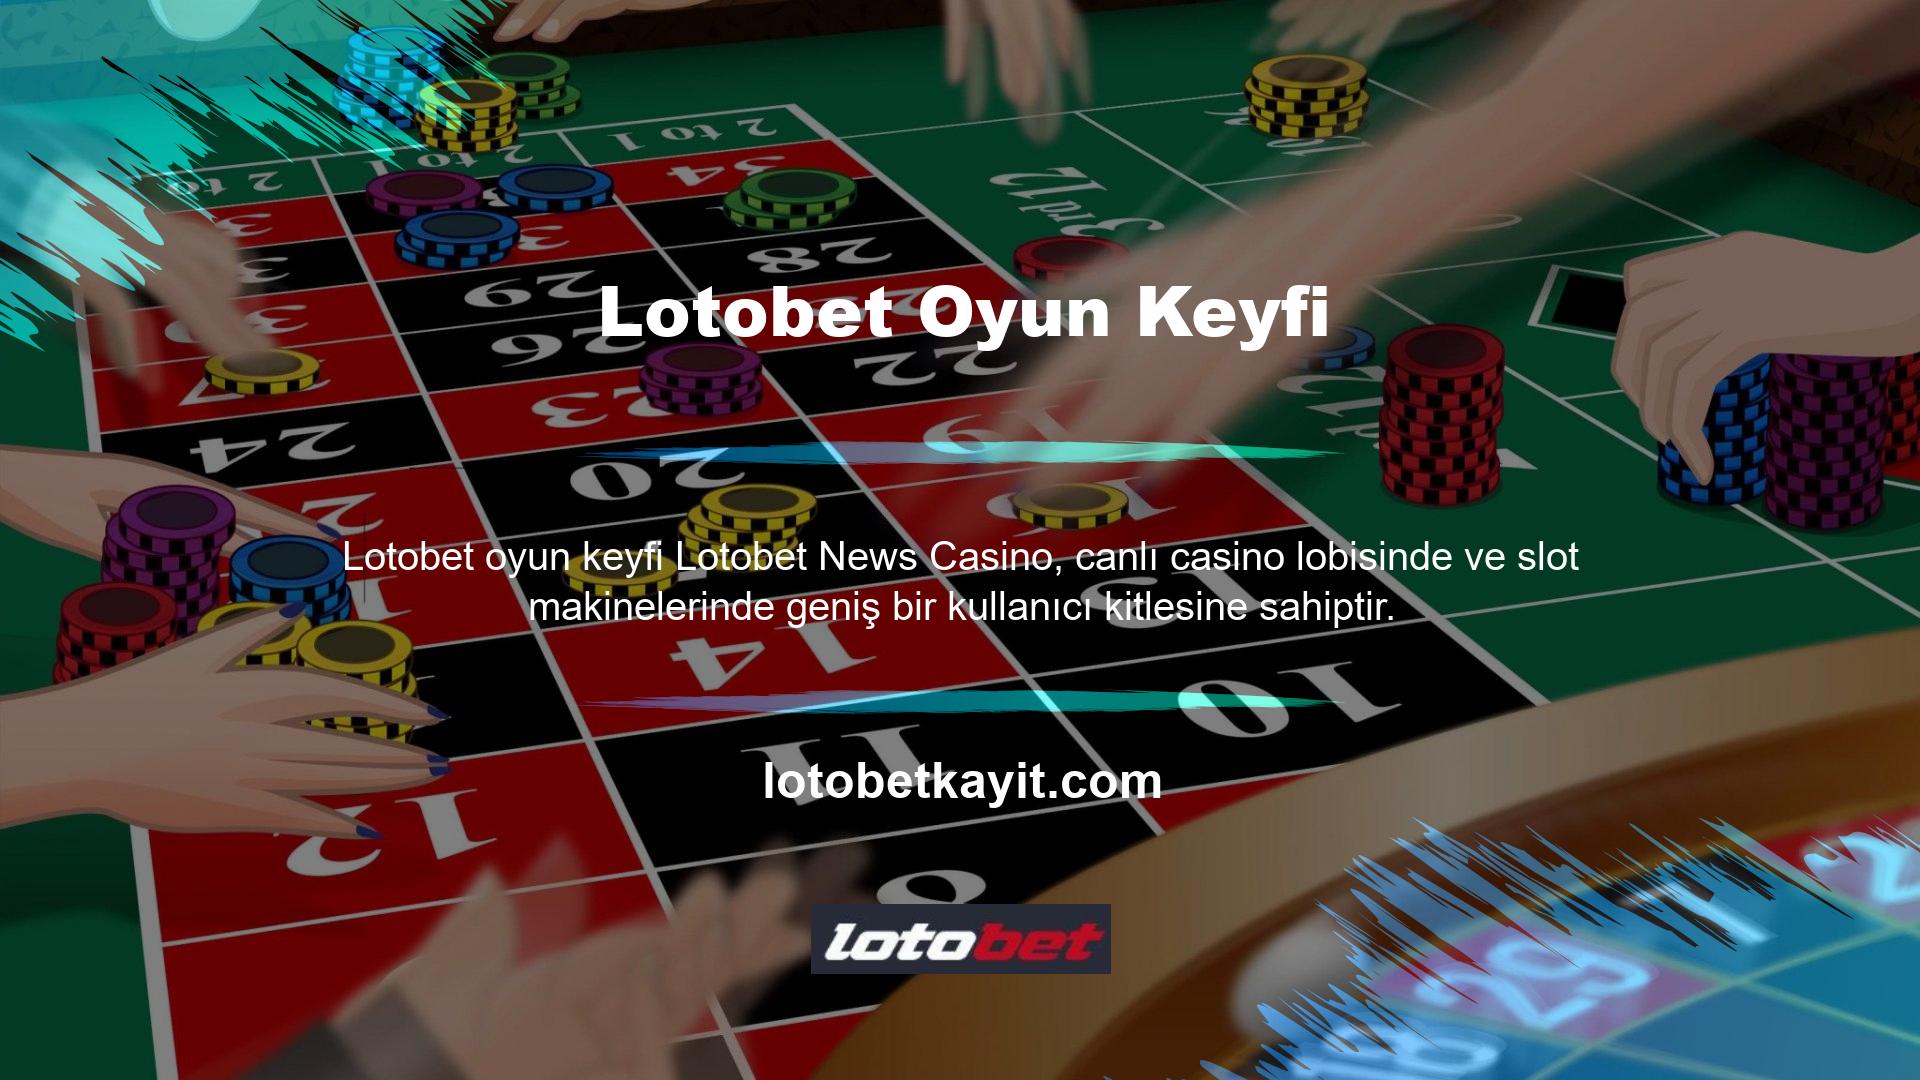 Masalar rulet, blackjack, bakara, monopoly, bingo, poker oyunları ve Türk krupiyelerini içerir